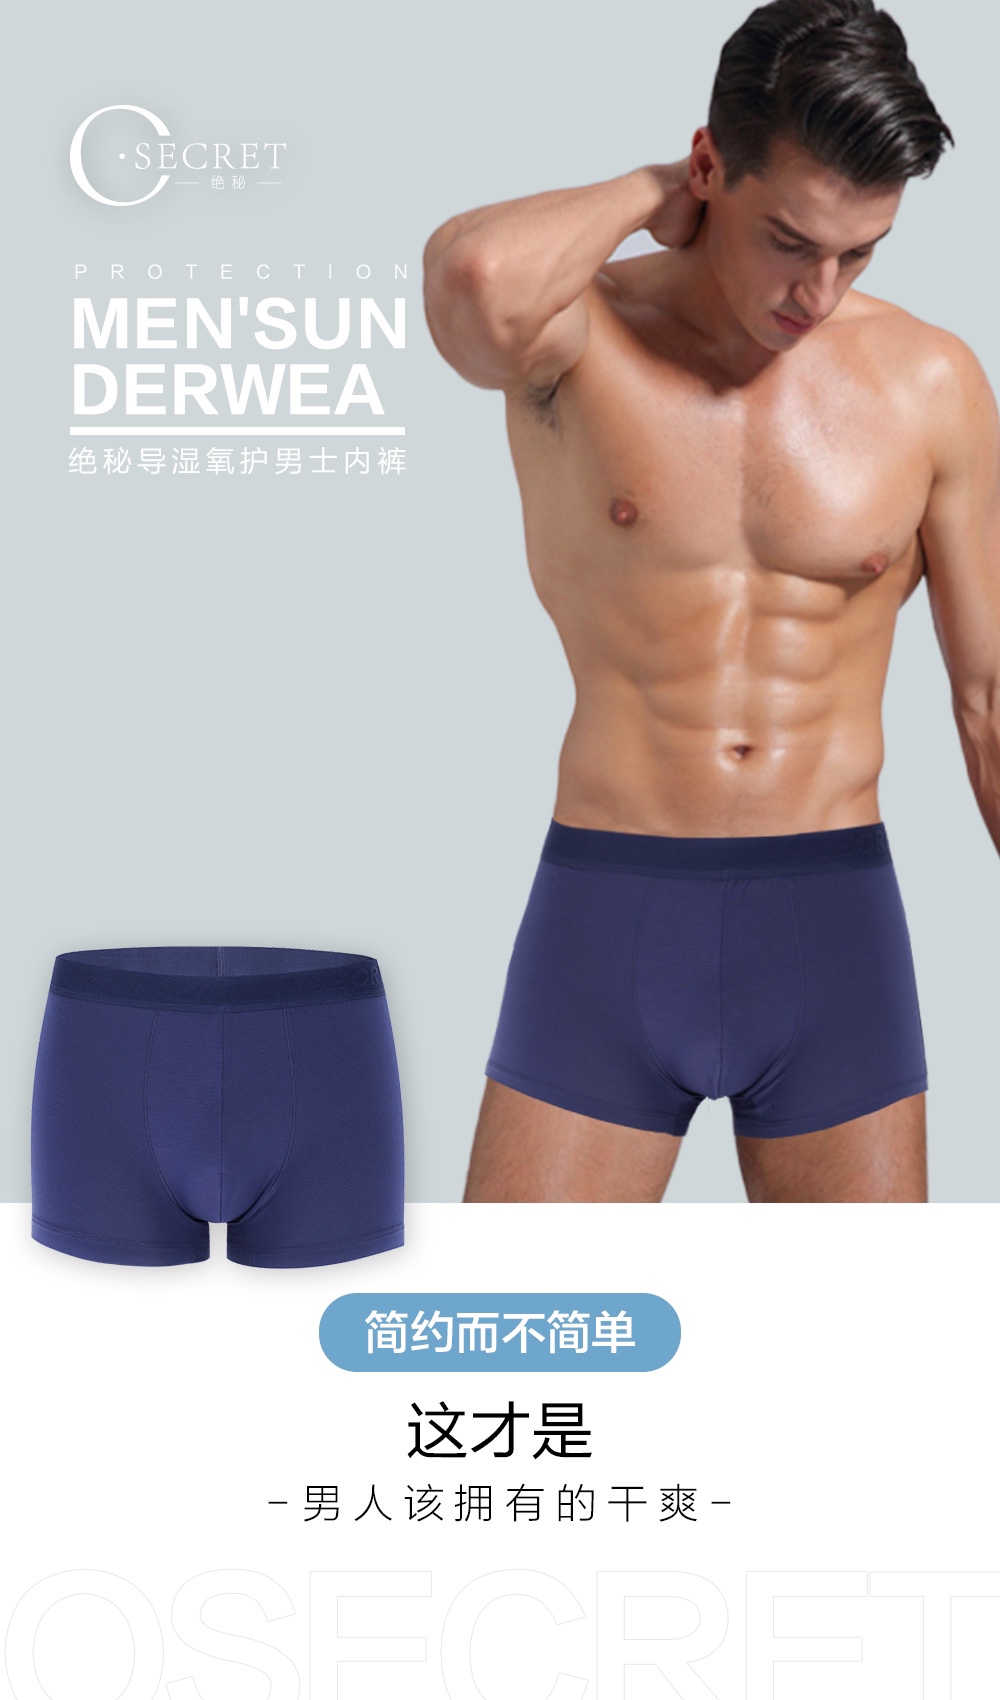 💕O’SECRET 
绝秘导湿氧护男士内裤（一盒两条的价格）
新内裤
新风尚详情图3